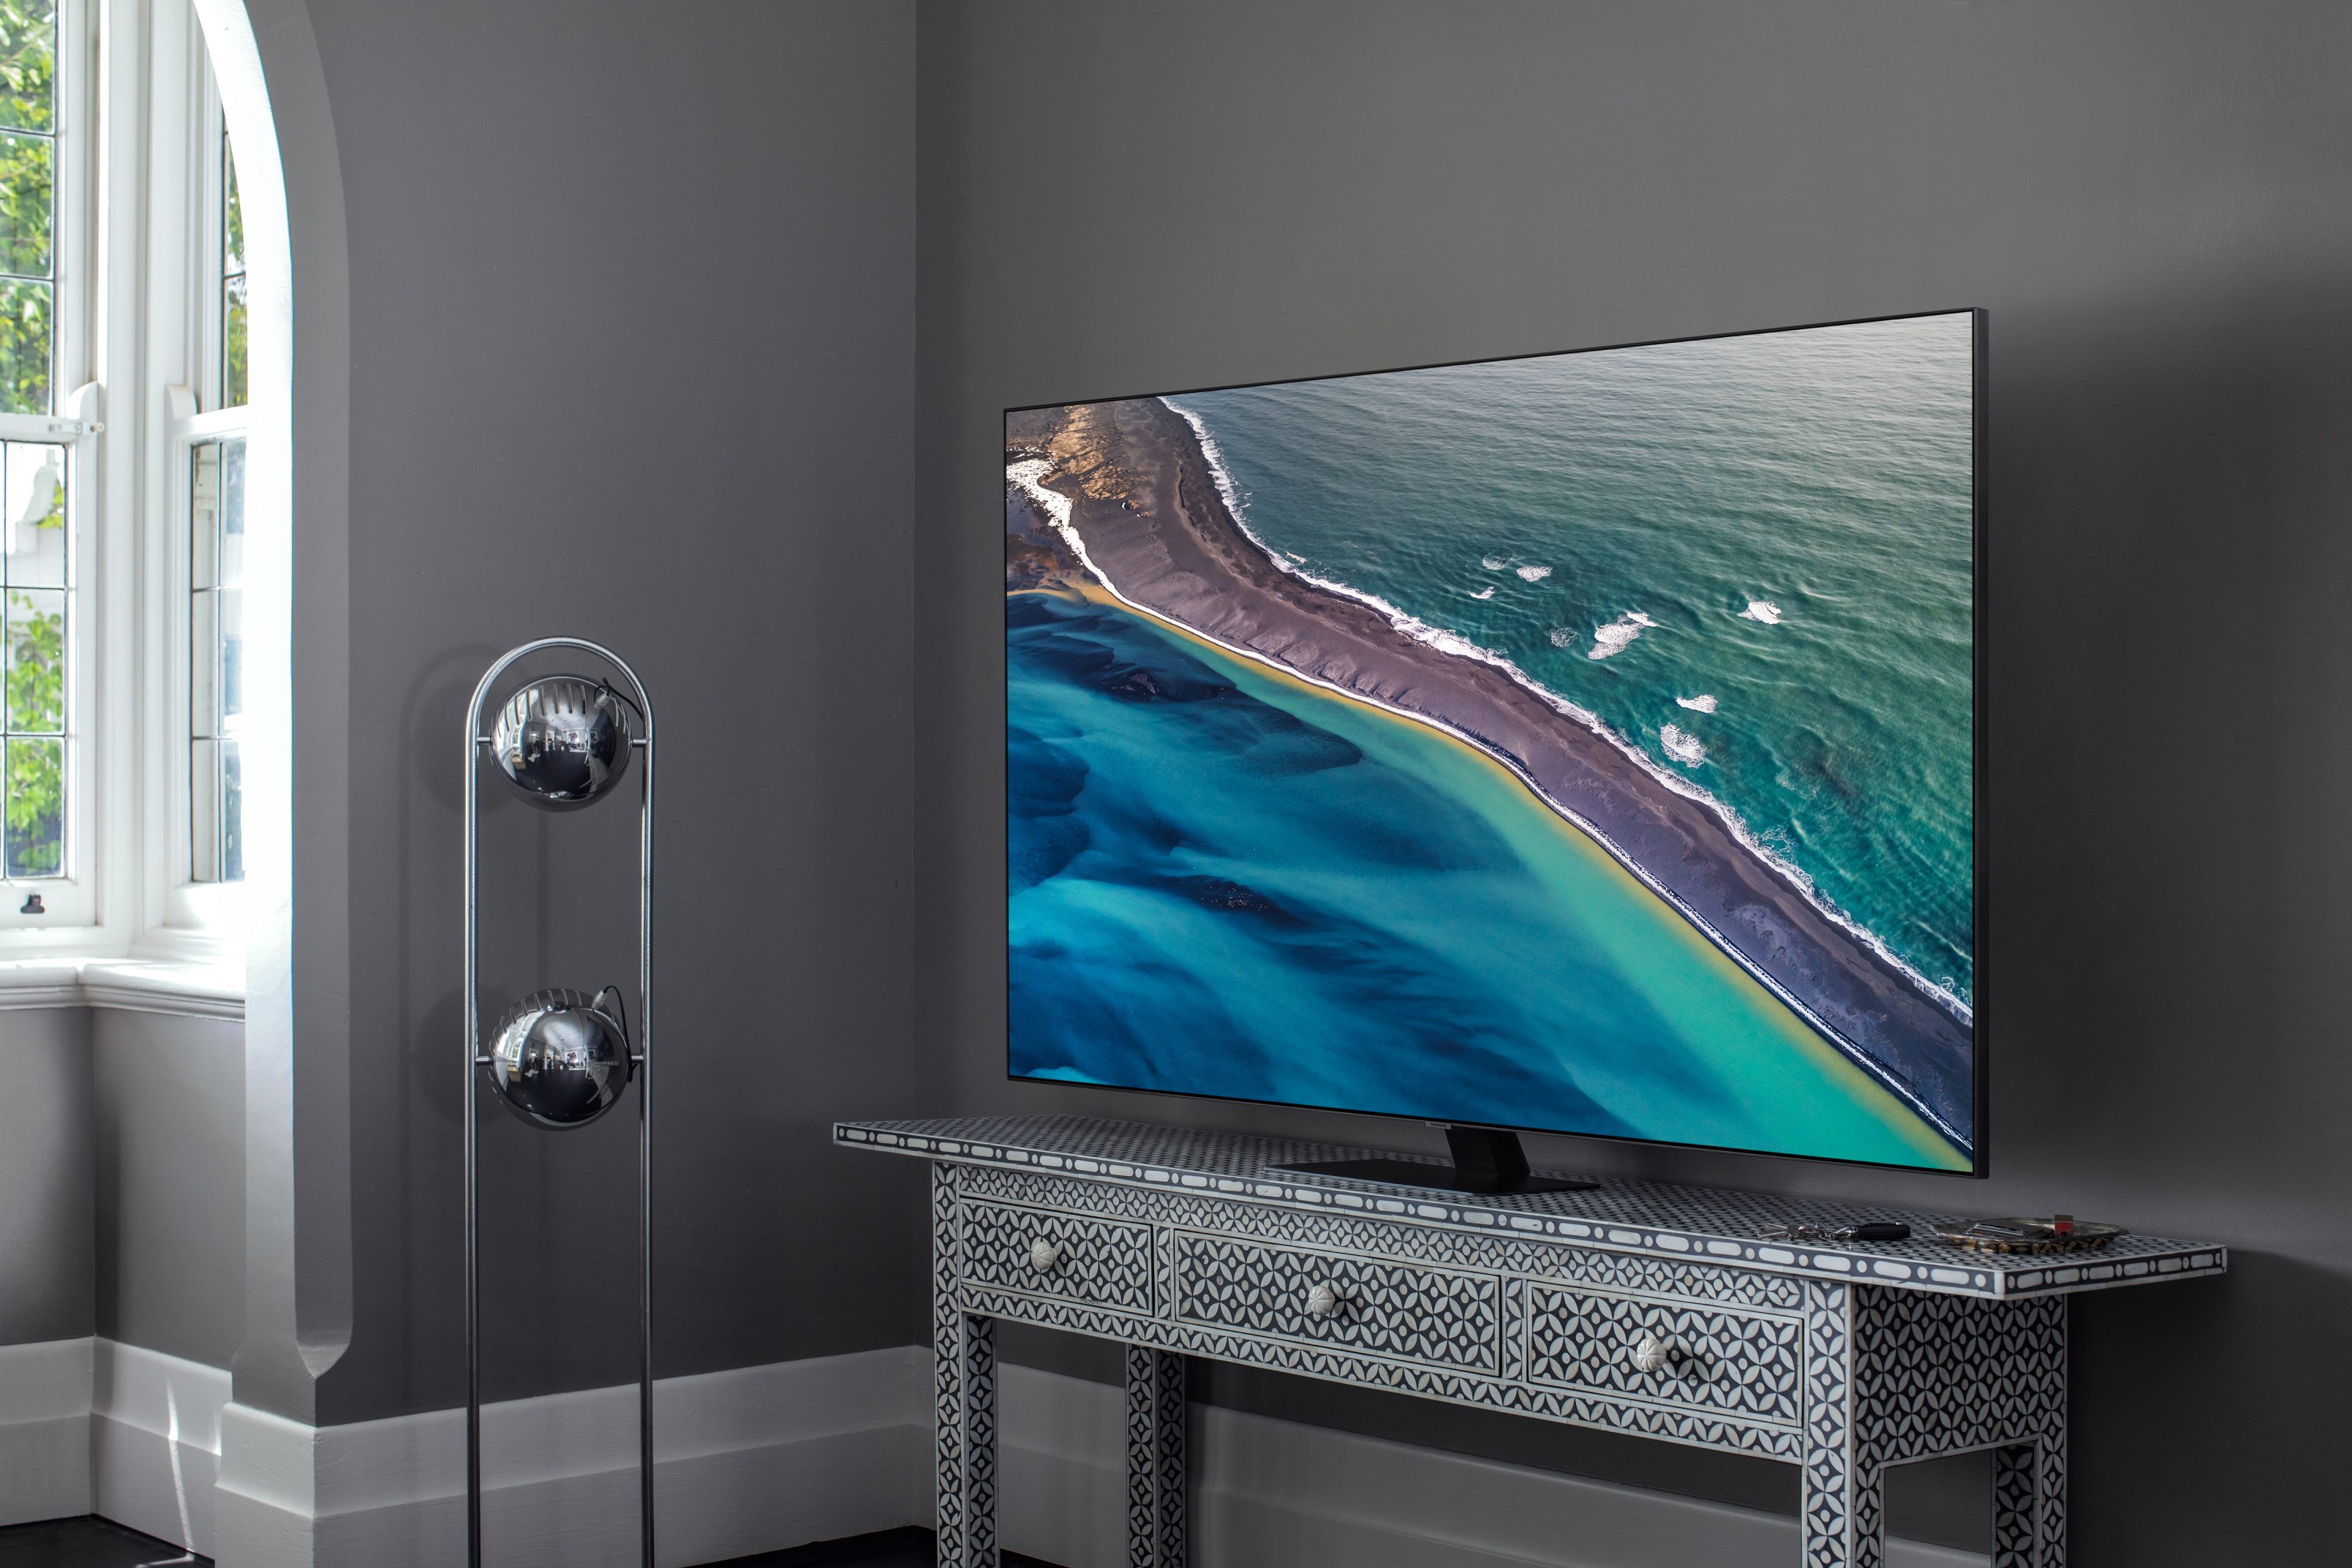 Samsung giới thiệu dòng TV QLED 4K và Crystal UHD 4K 2020 tại Việt Nam